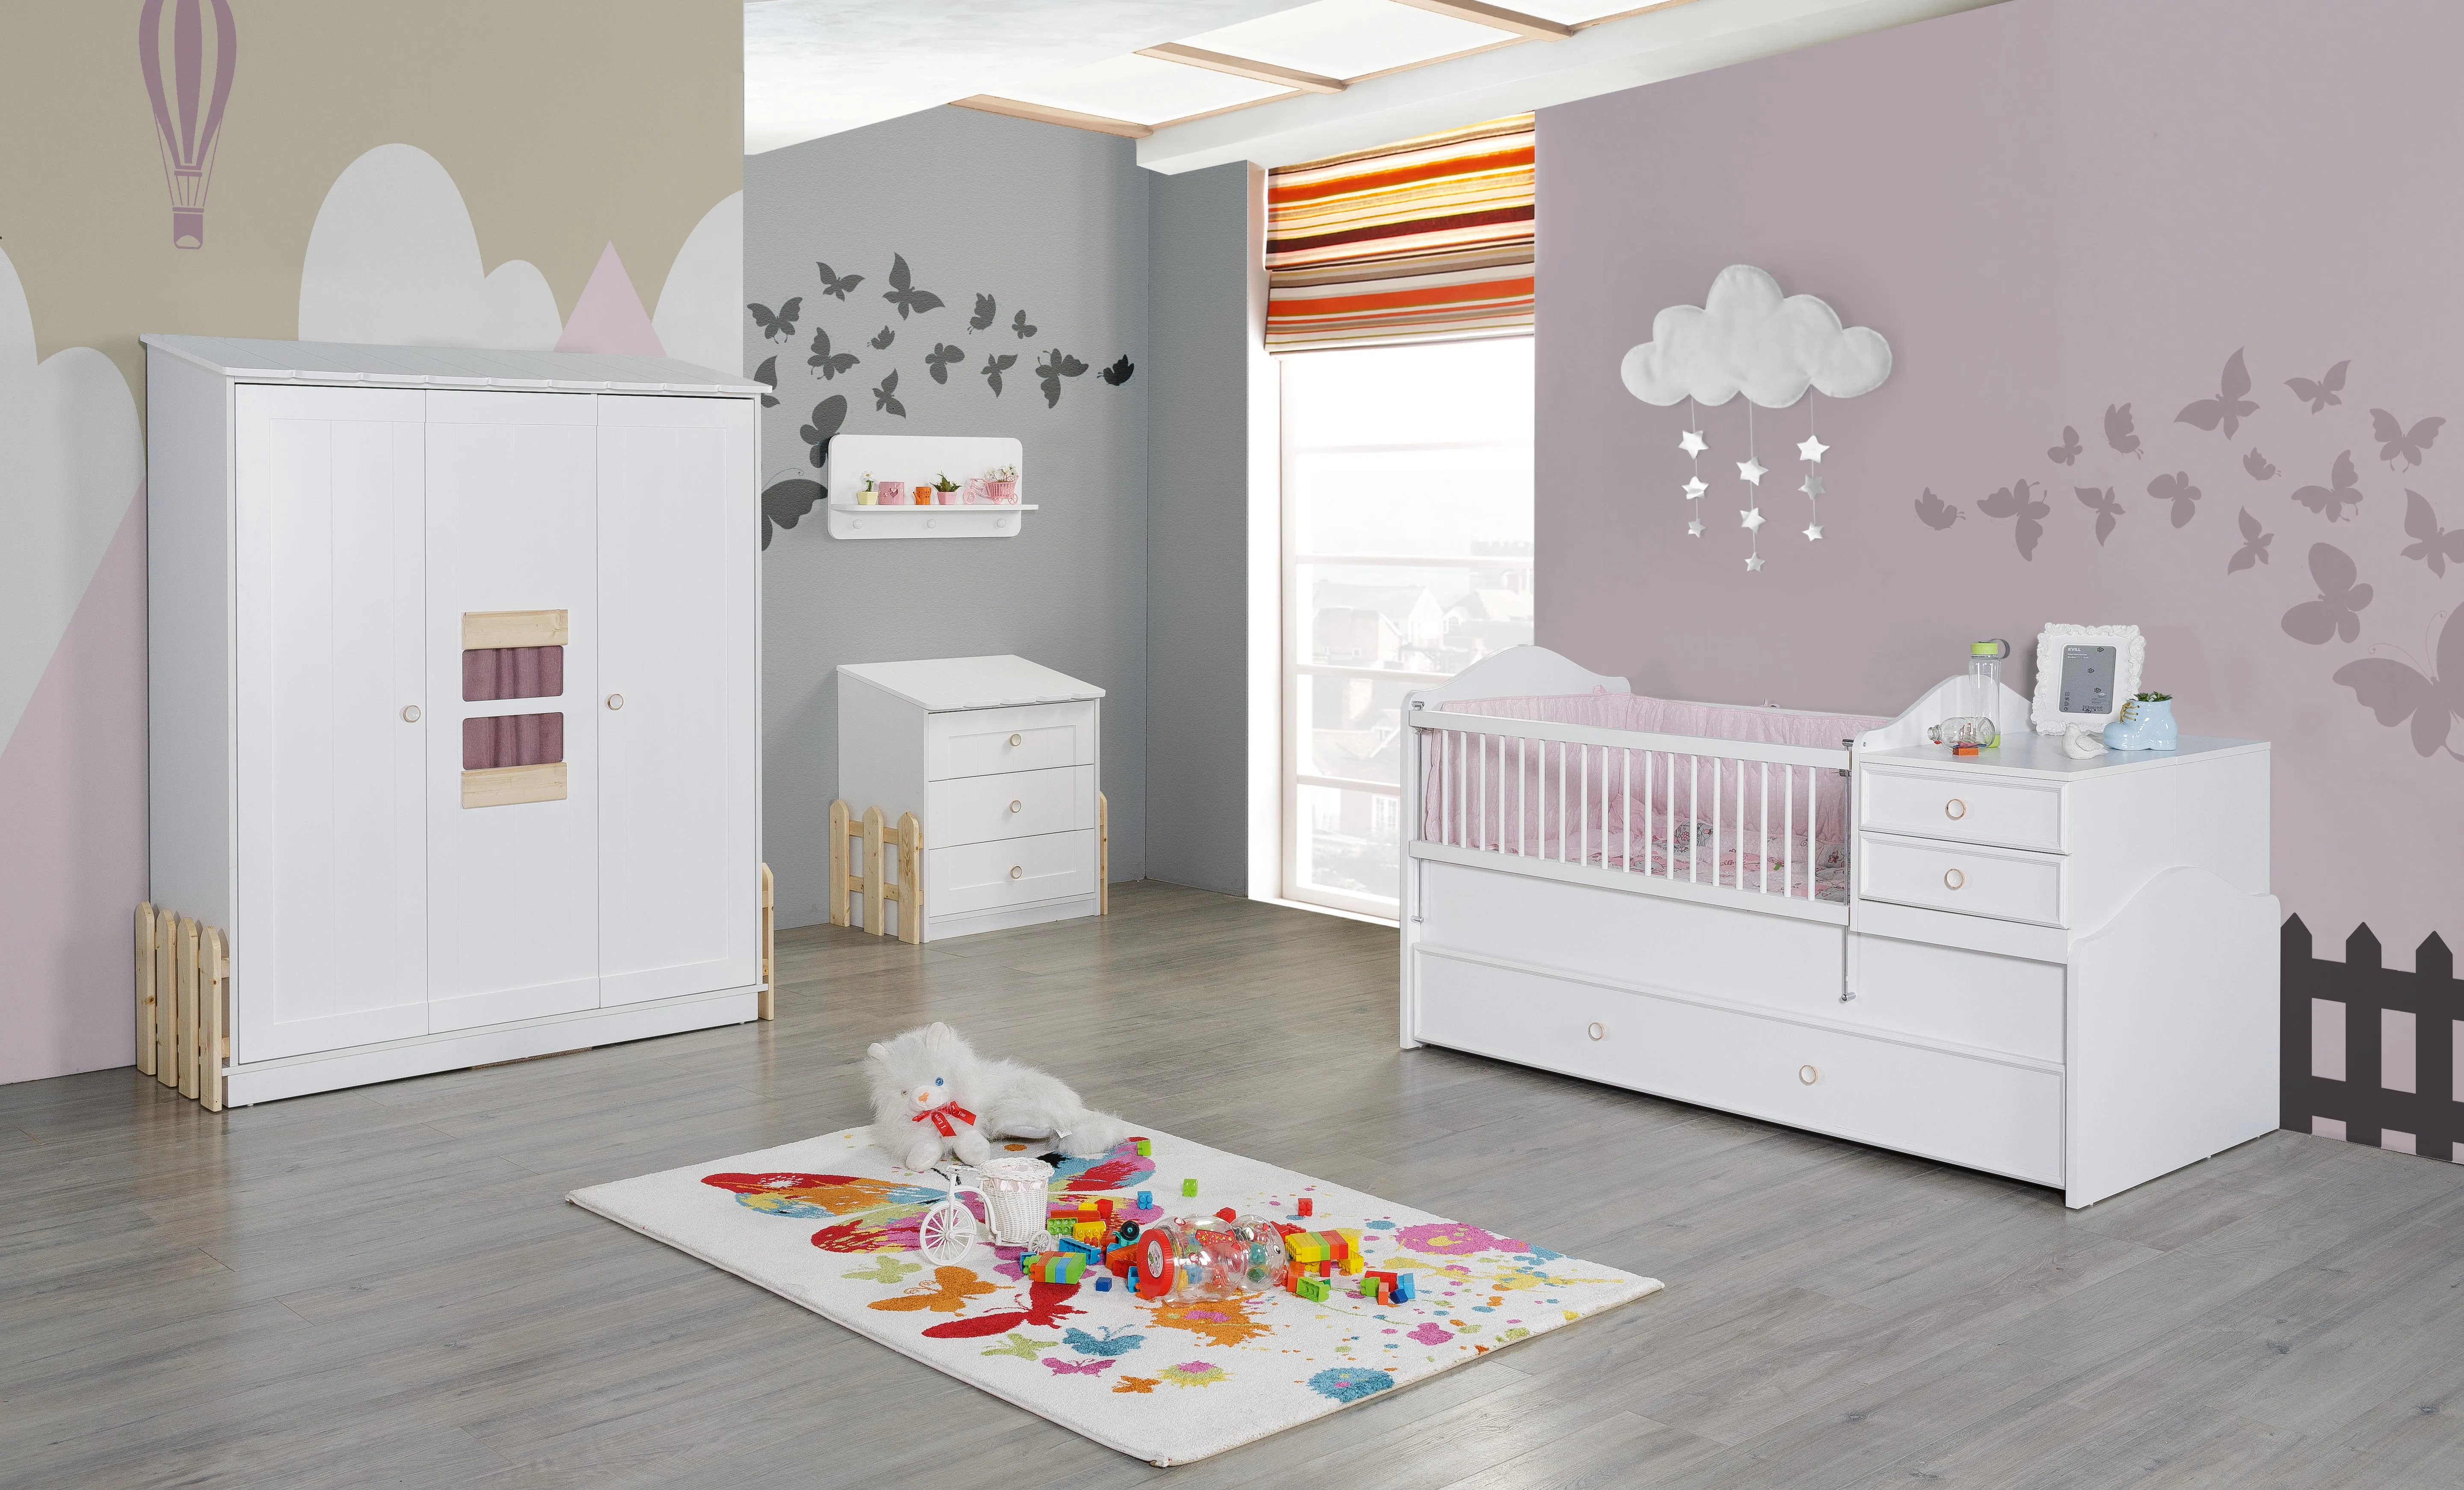 nursery bedroom furniture sets